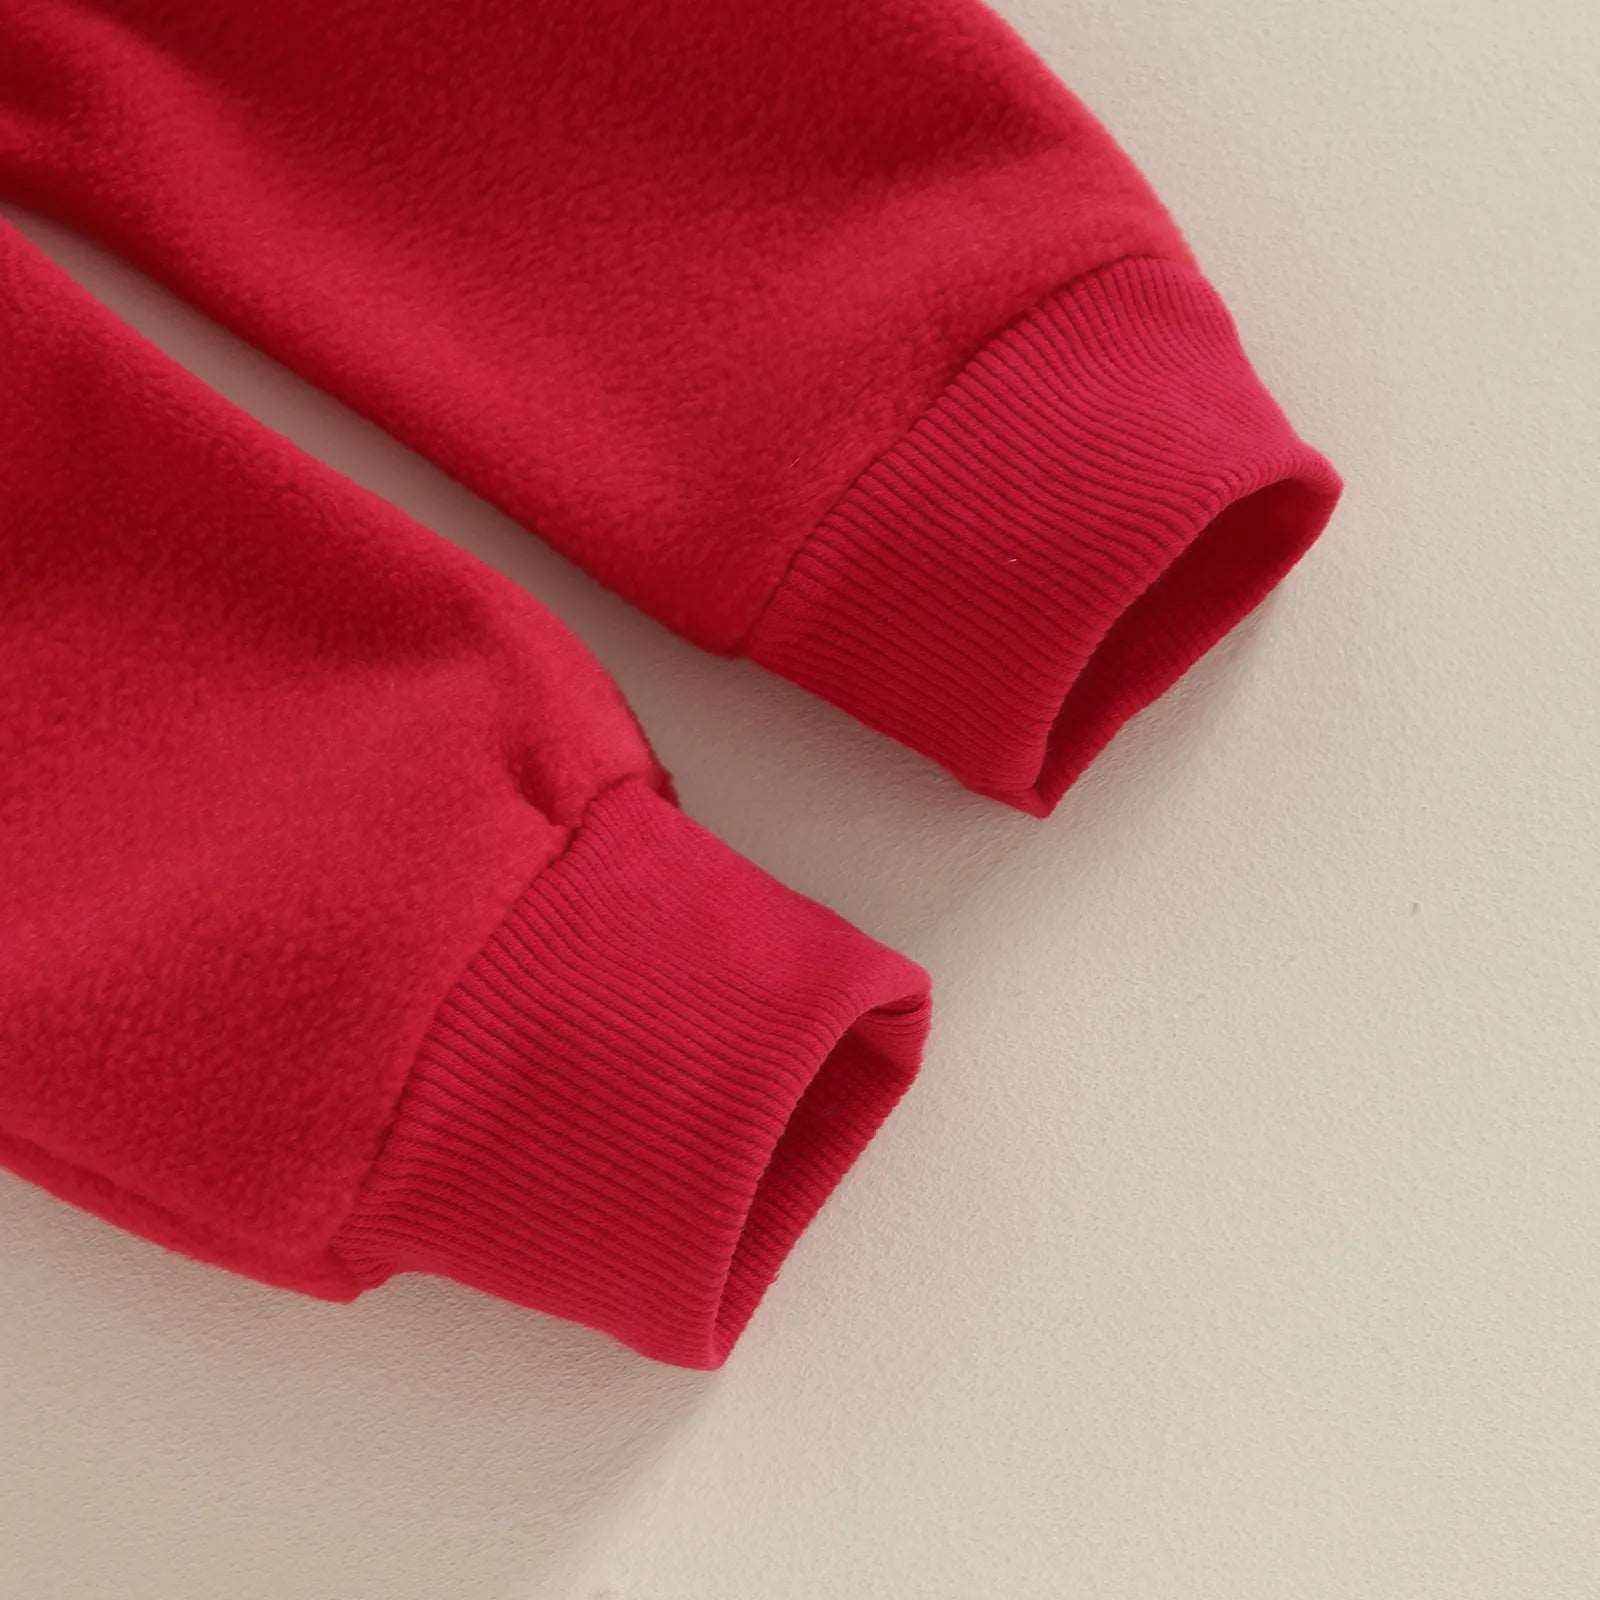 Santa 2Pcs Long Sleeve and Pants - Joe Baby Products